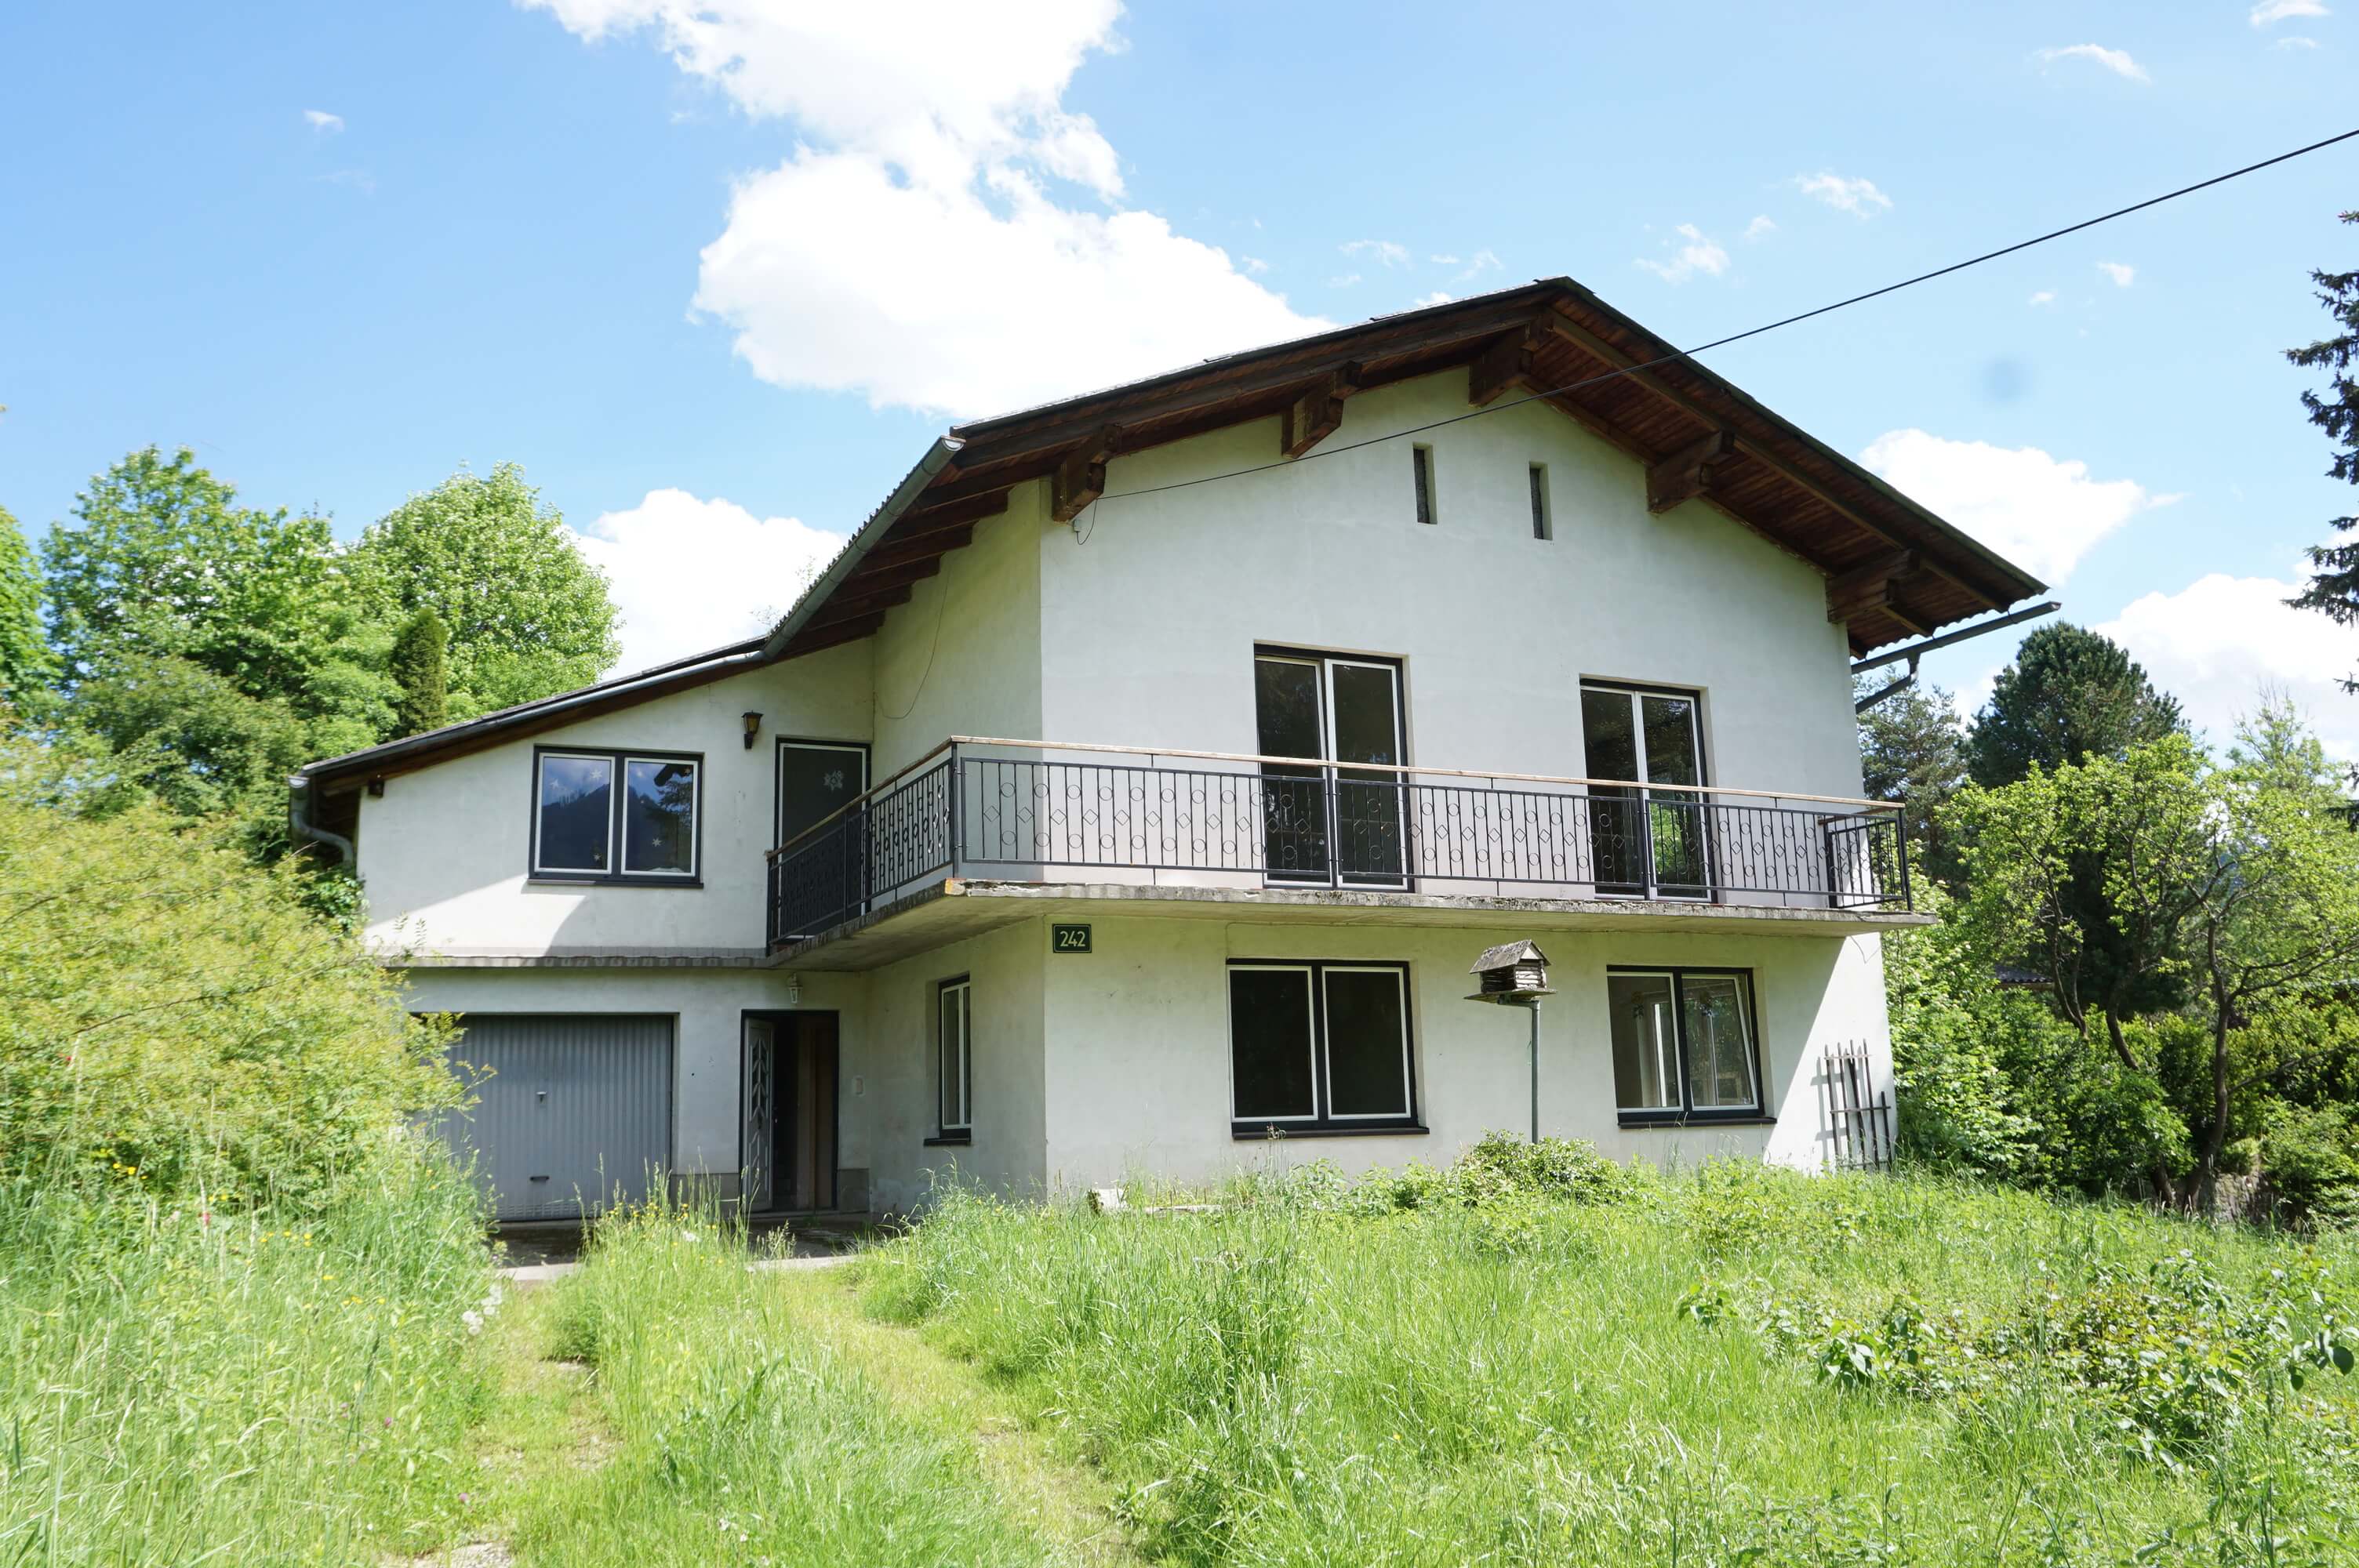 Aflenz: Wohnhaus mit schönem Blick ins Grün